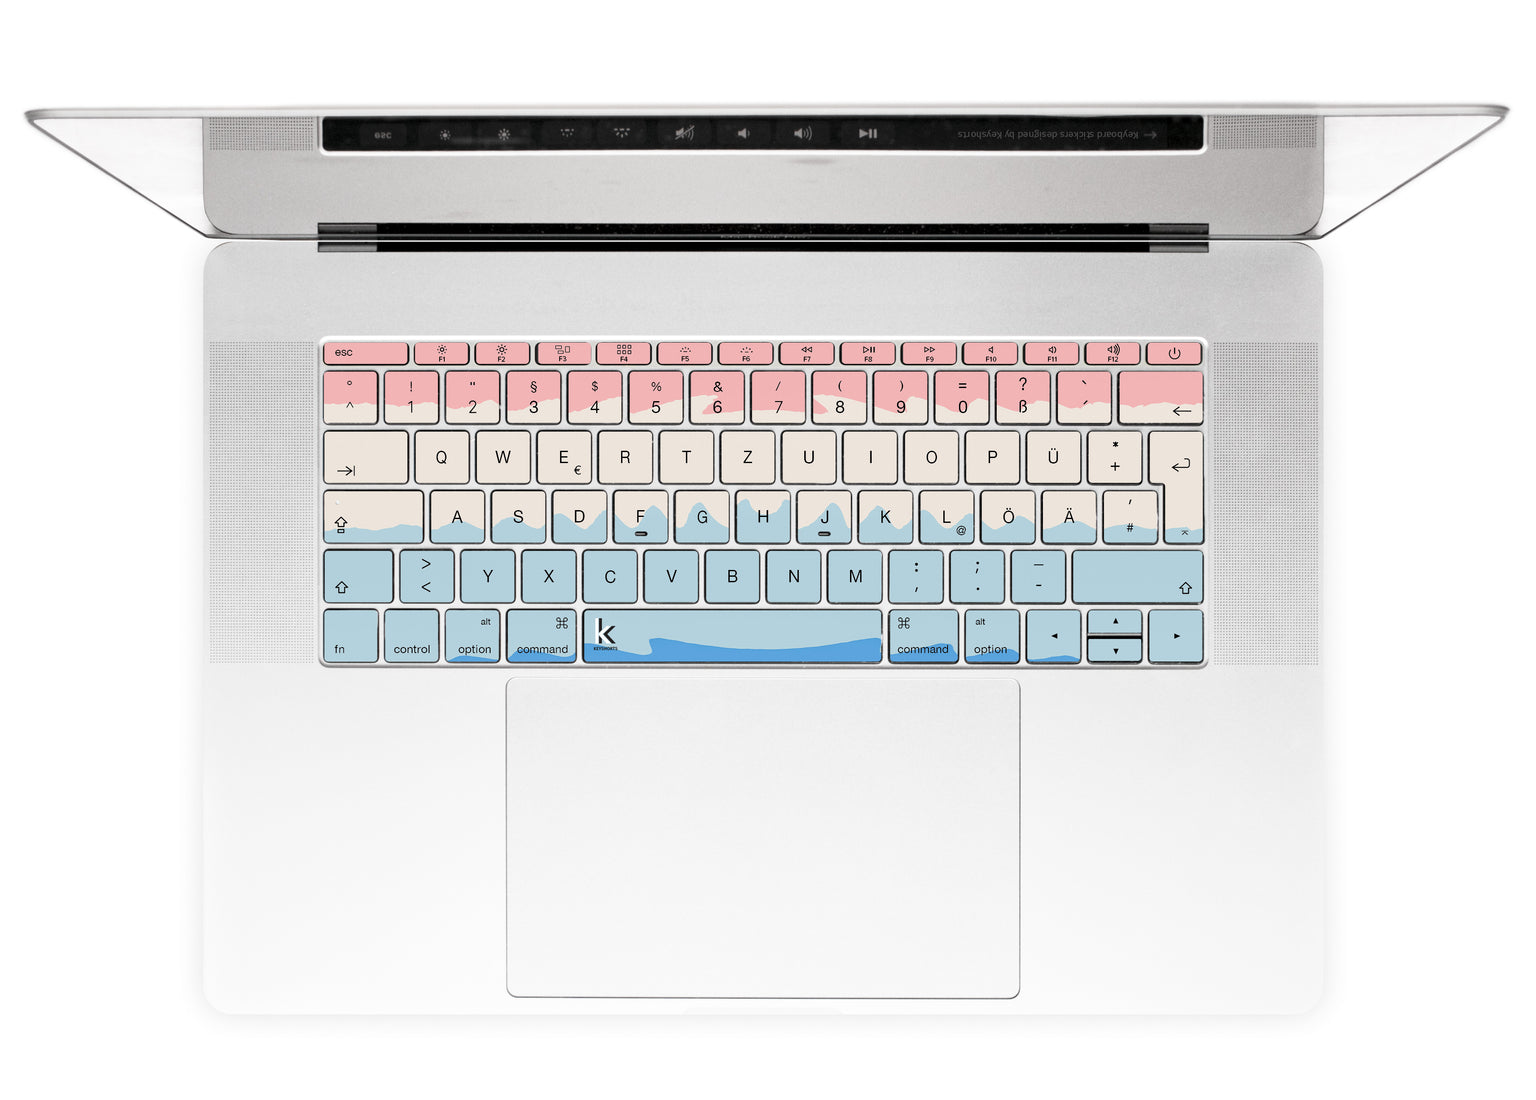 Acrylic Ombre MacBook Keyboard Stickers alternate German keyboard